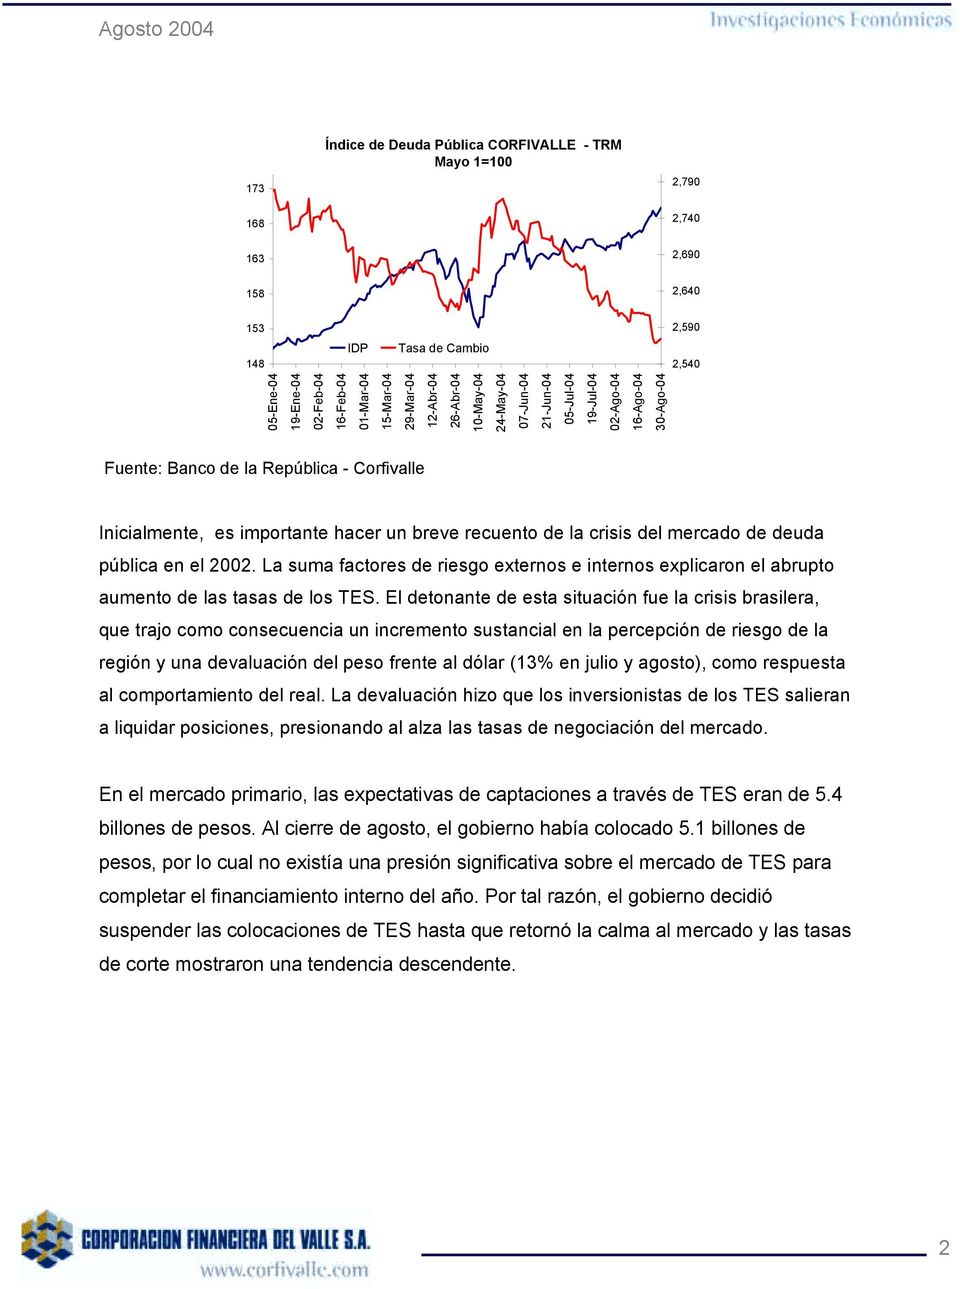 breve recuento de la crisis del mercado de deuda pública en el 2002. La suma factores de riesgo externos e internos explicaron el abrupto aumento de las tasas de los TES.